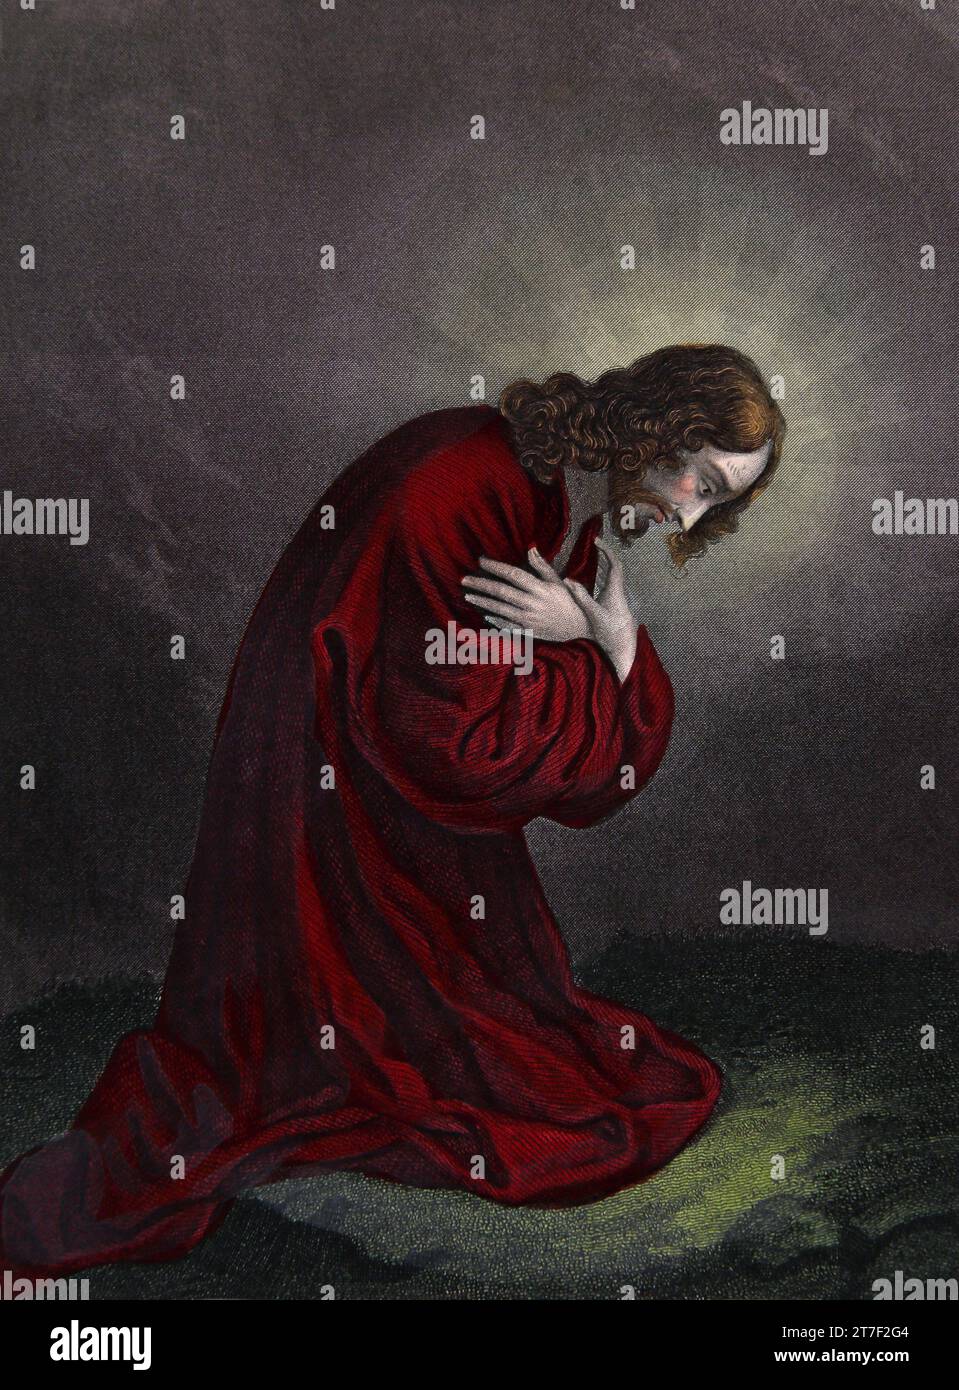 Illustration de Jésus Christ agenouillé et priant dans le jardin de Gethsémani pour la deuxième fois (Matthieu XXVI.42) de la famille auto-interprétante Banque D'Images